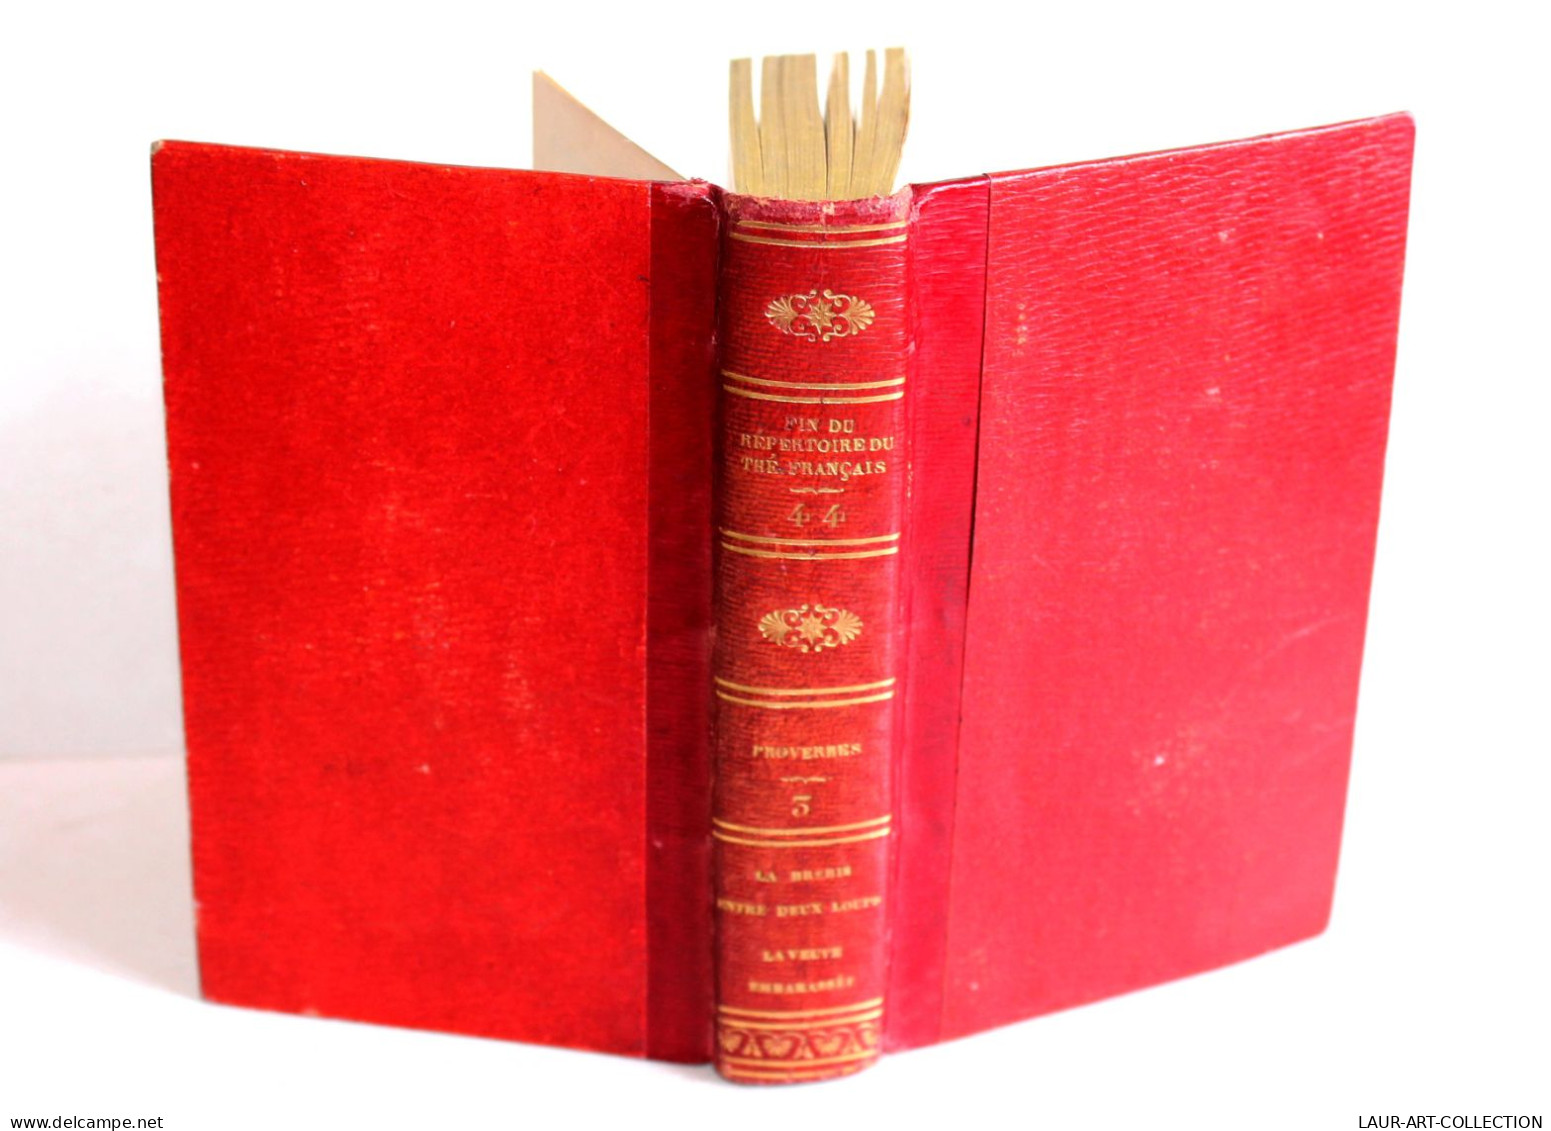 FIN DU REPERTOIRE DU THEATRE FRANCAIS Par LEPEINTRE PROVERBES TOME III 1824 DABO / LIVRE ANCIEN XIXe SIECLE (1803.252) - Auteurs Français